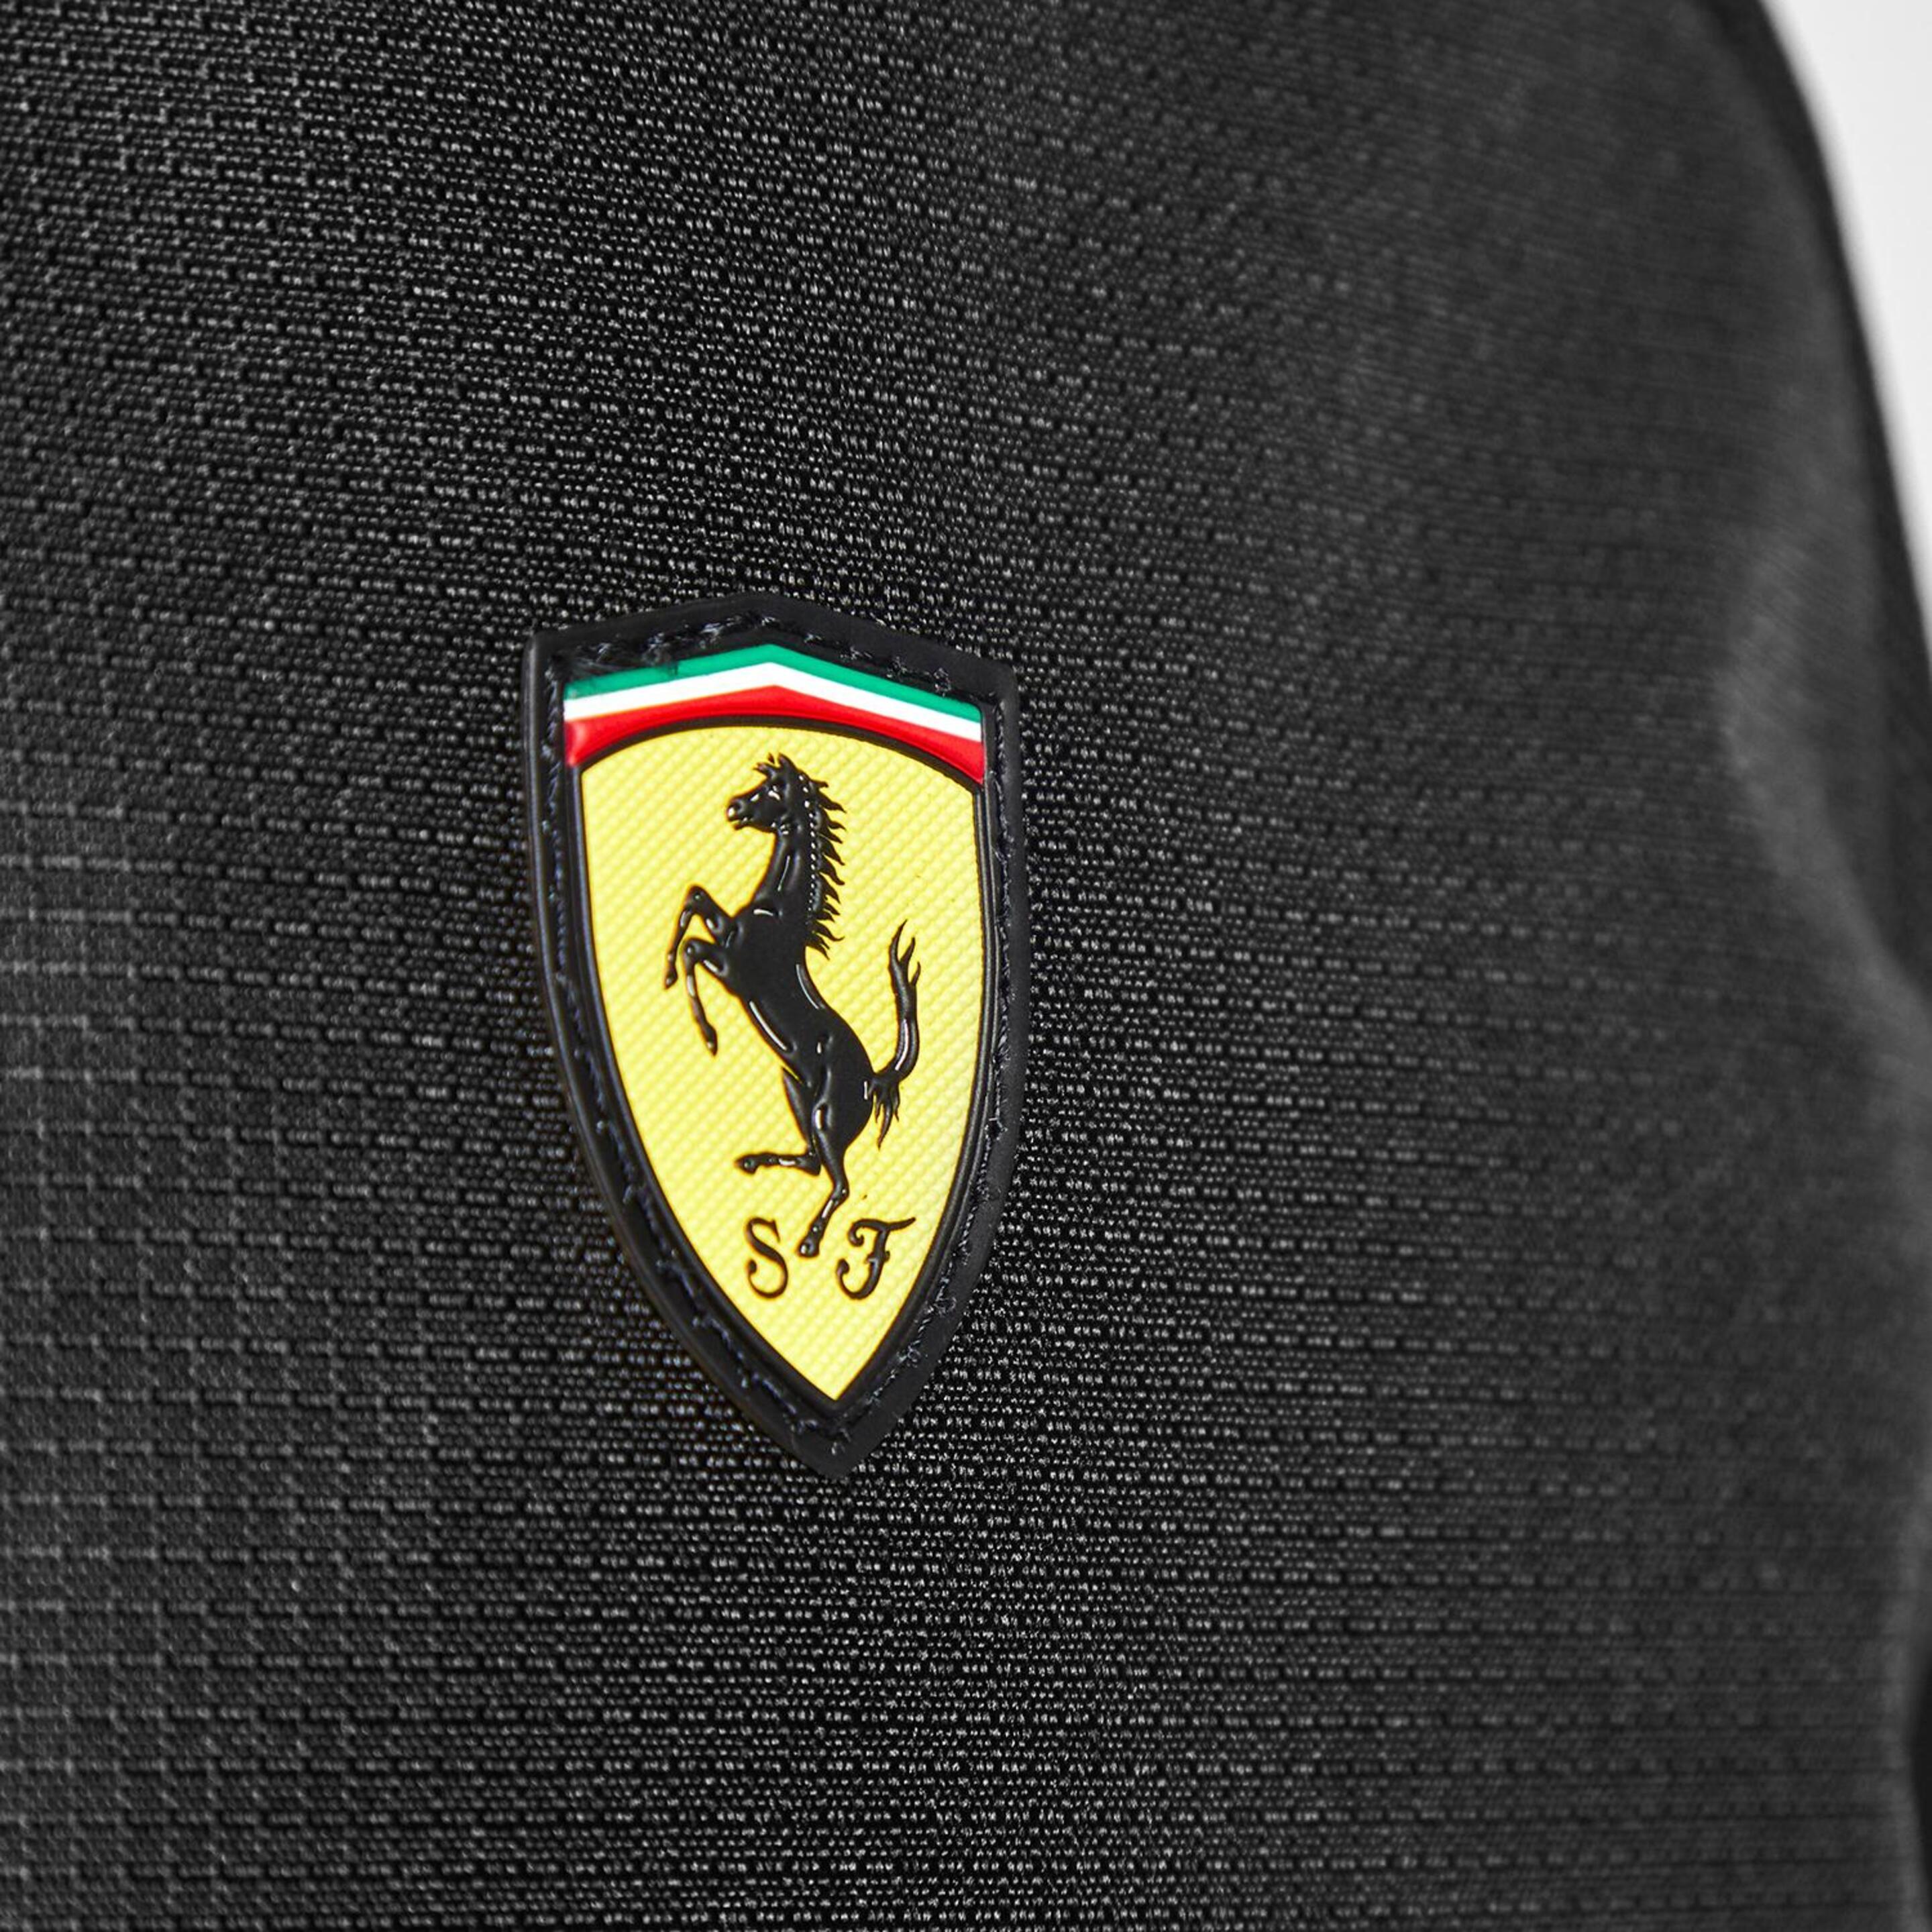 Puma Ferrari